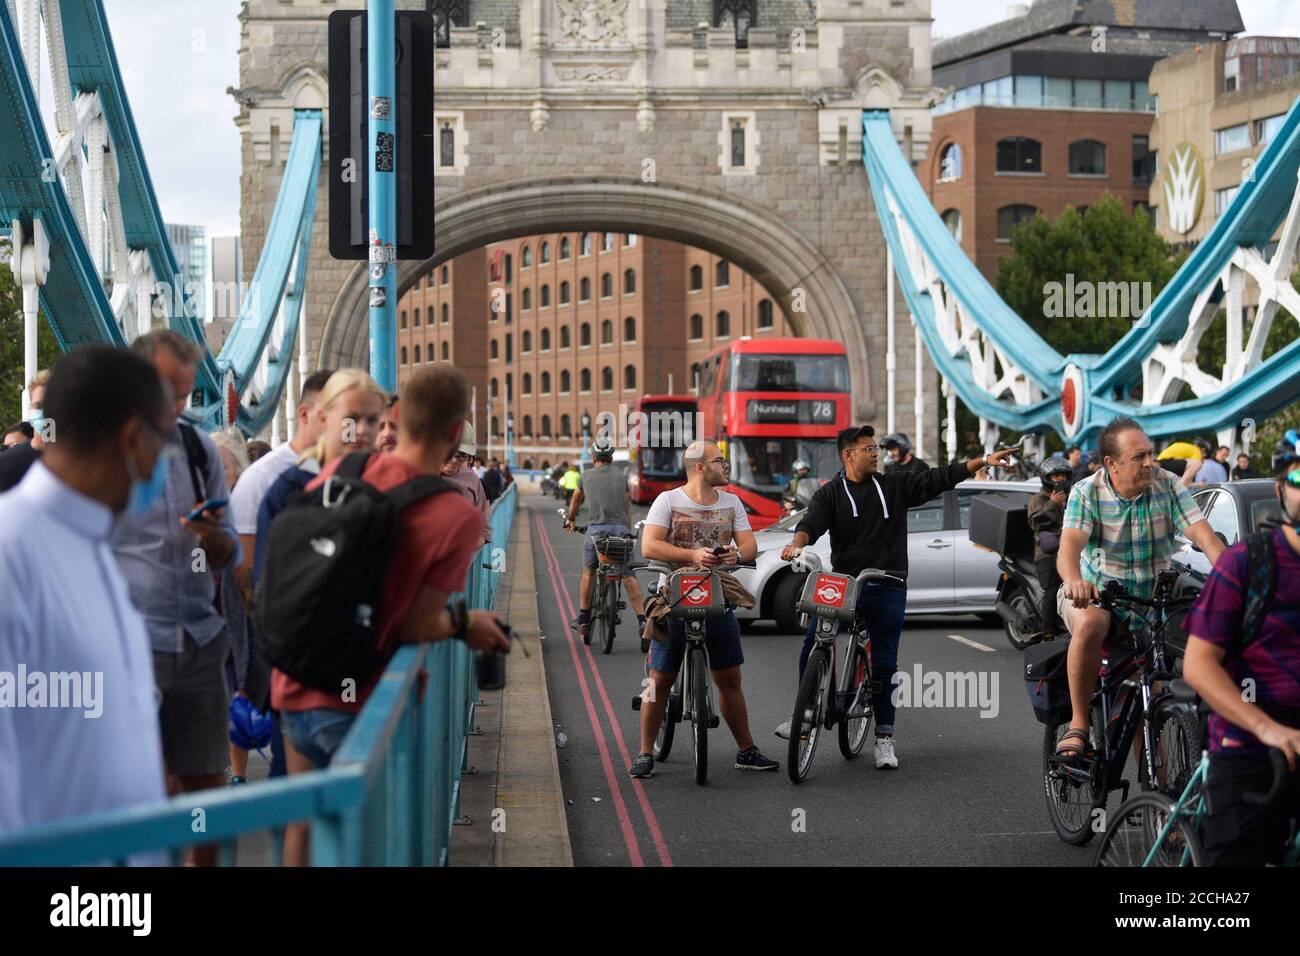 Menschen warten auf die Annäherung an die Tower Bridge in London, nachdem die Brücke offen blieb und Verkehrschaos verursachte. Stockfoto